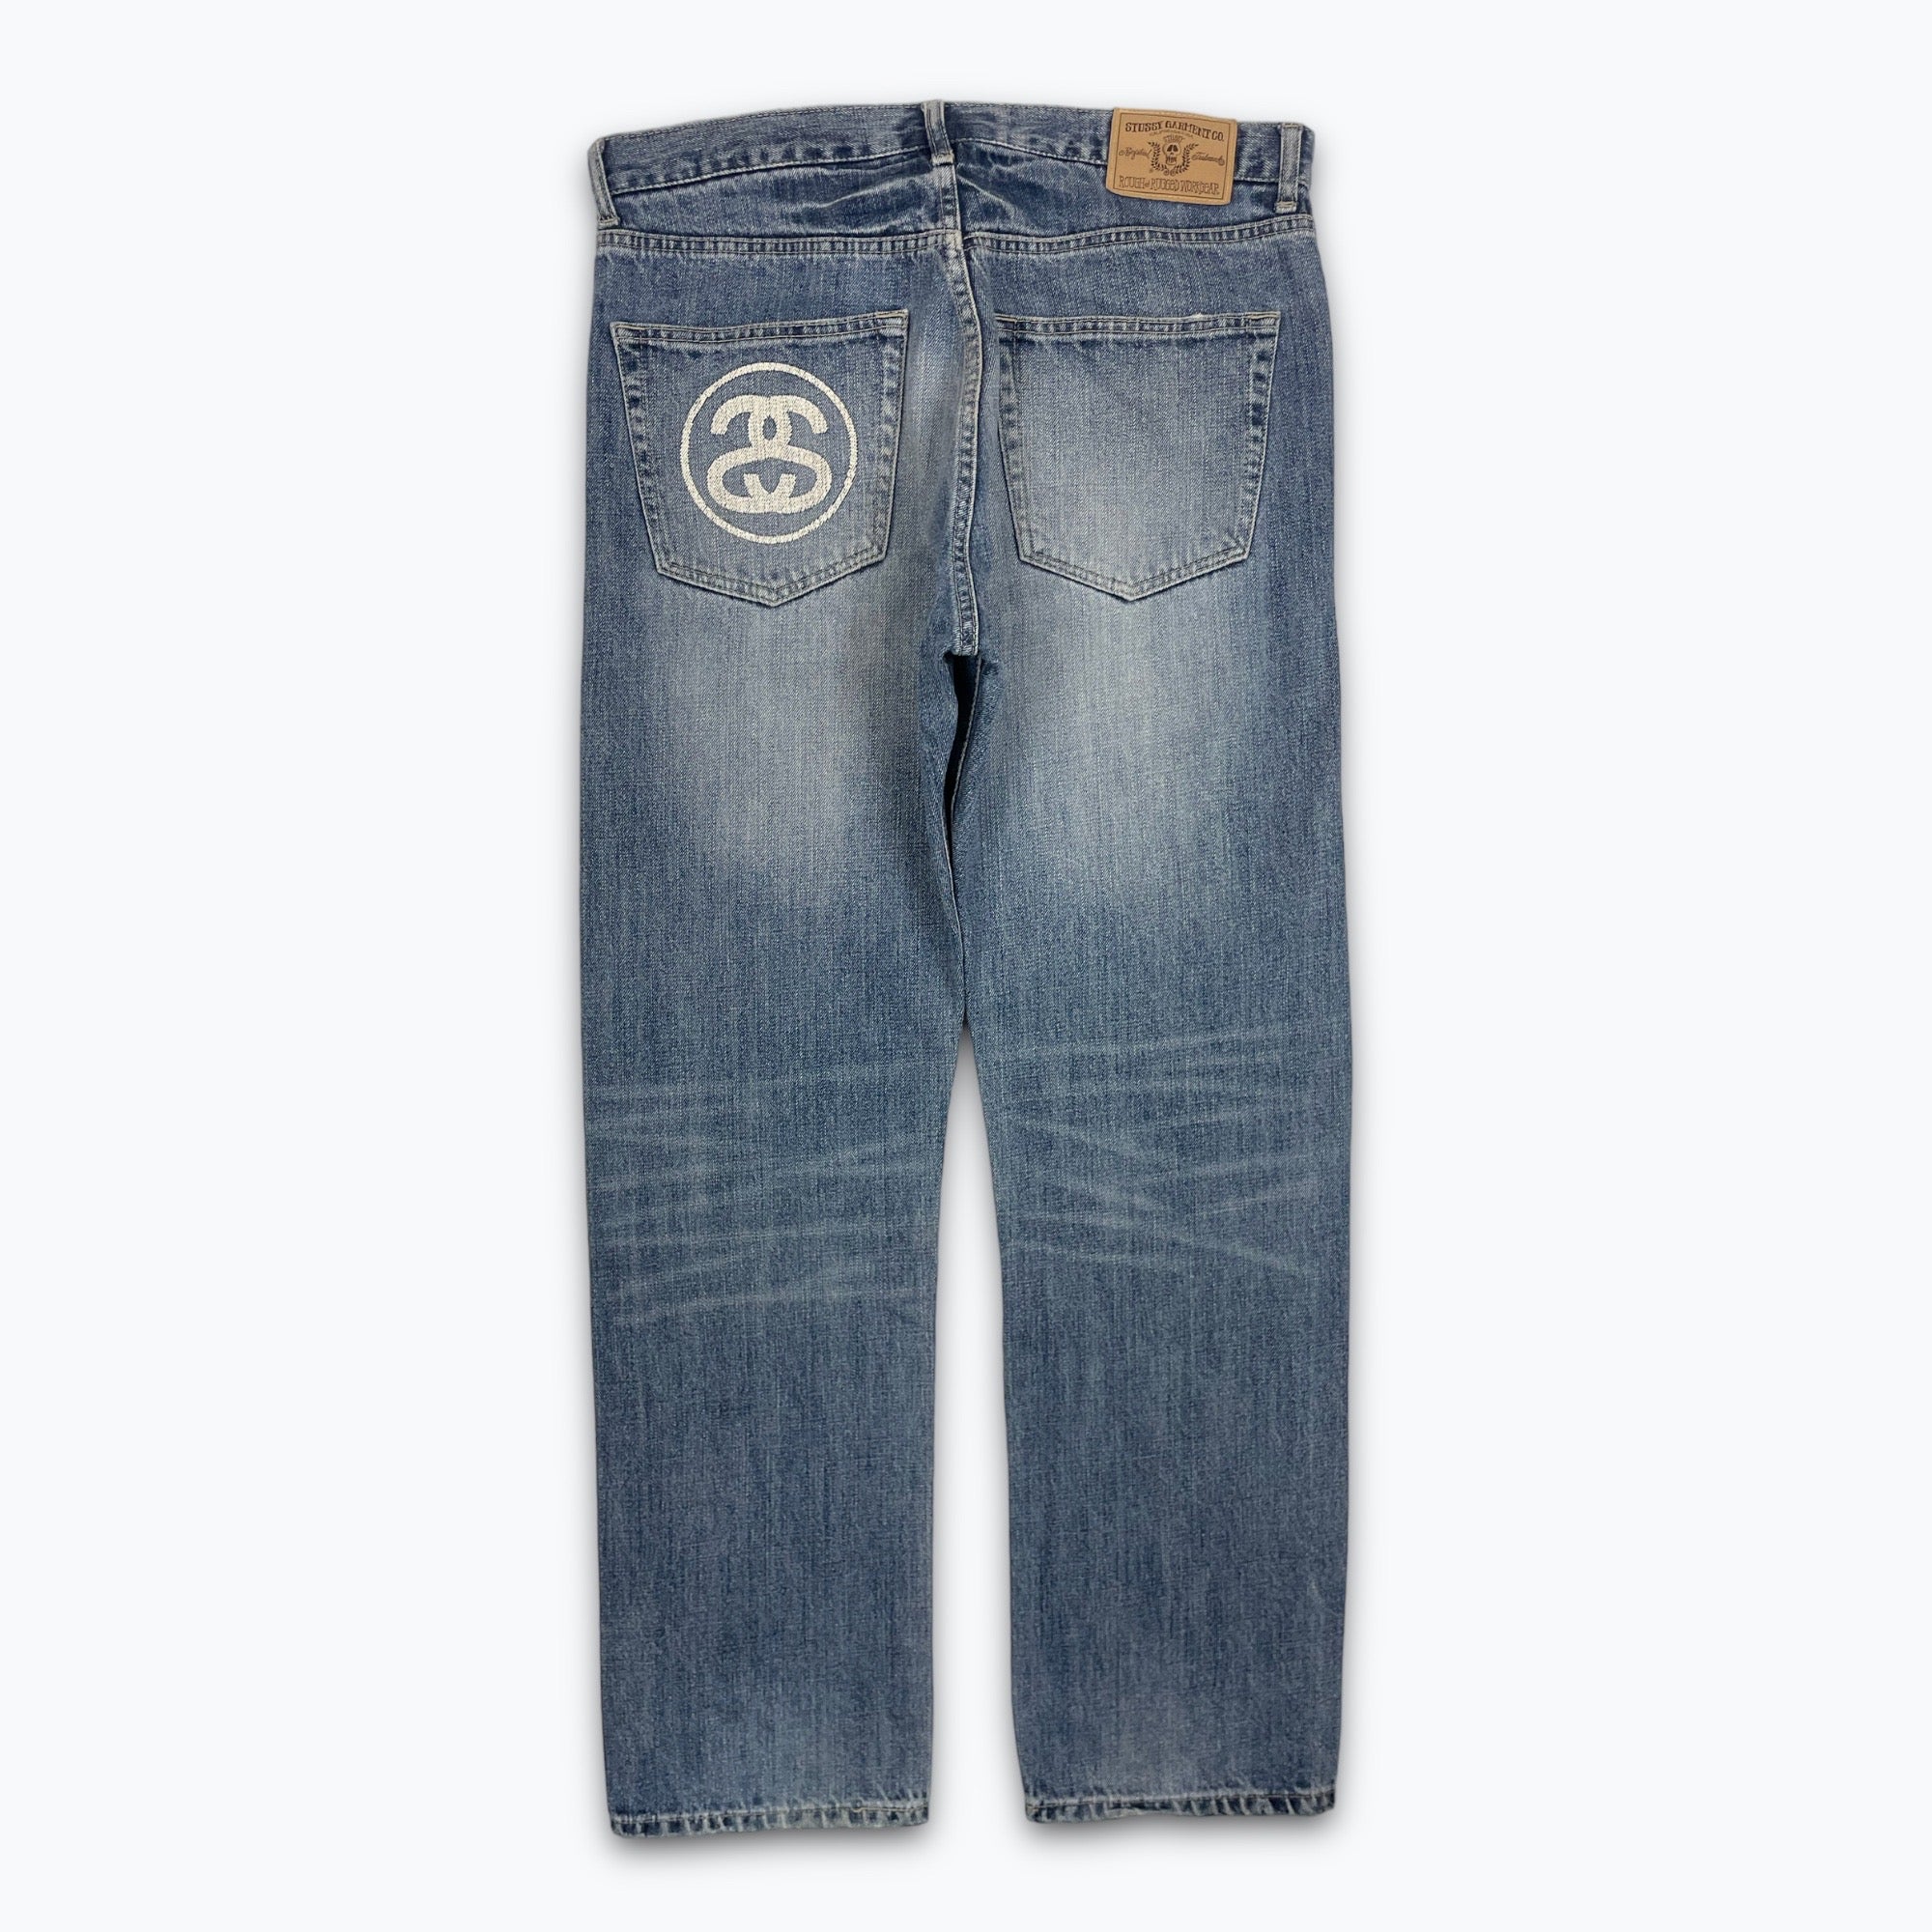 Stüssy jeans (W34) – RETRO SEDE